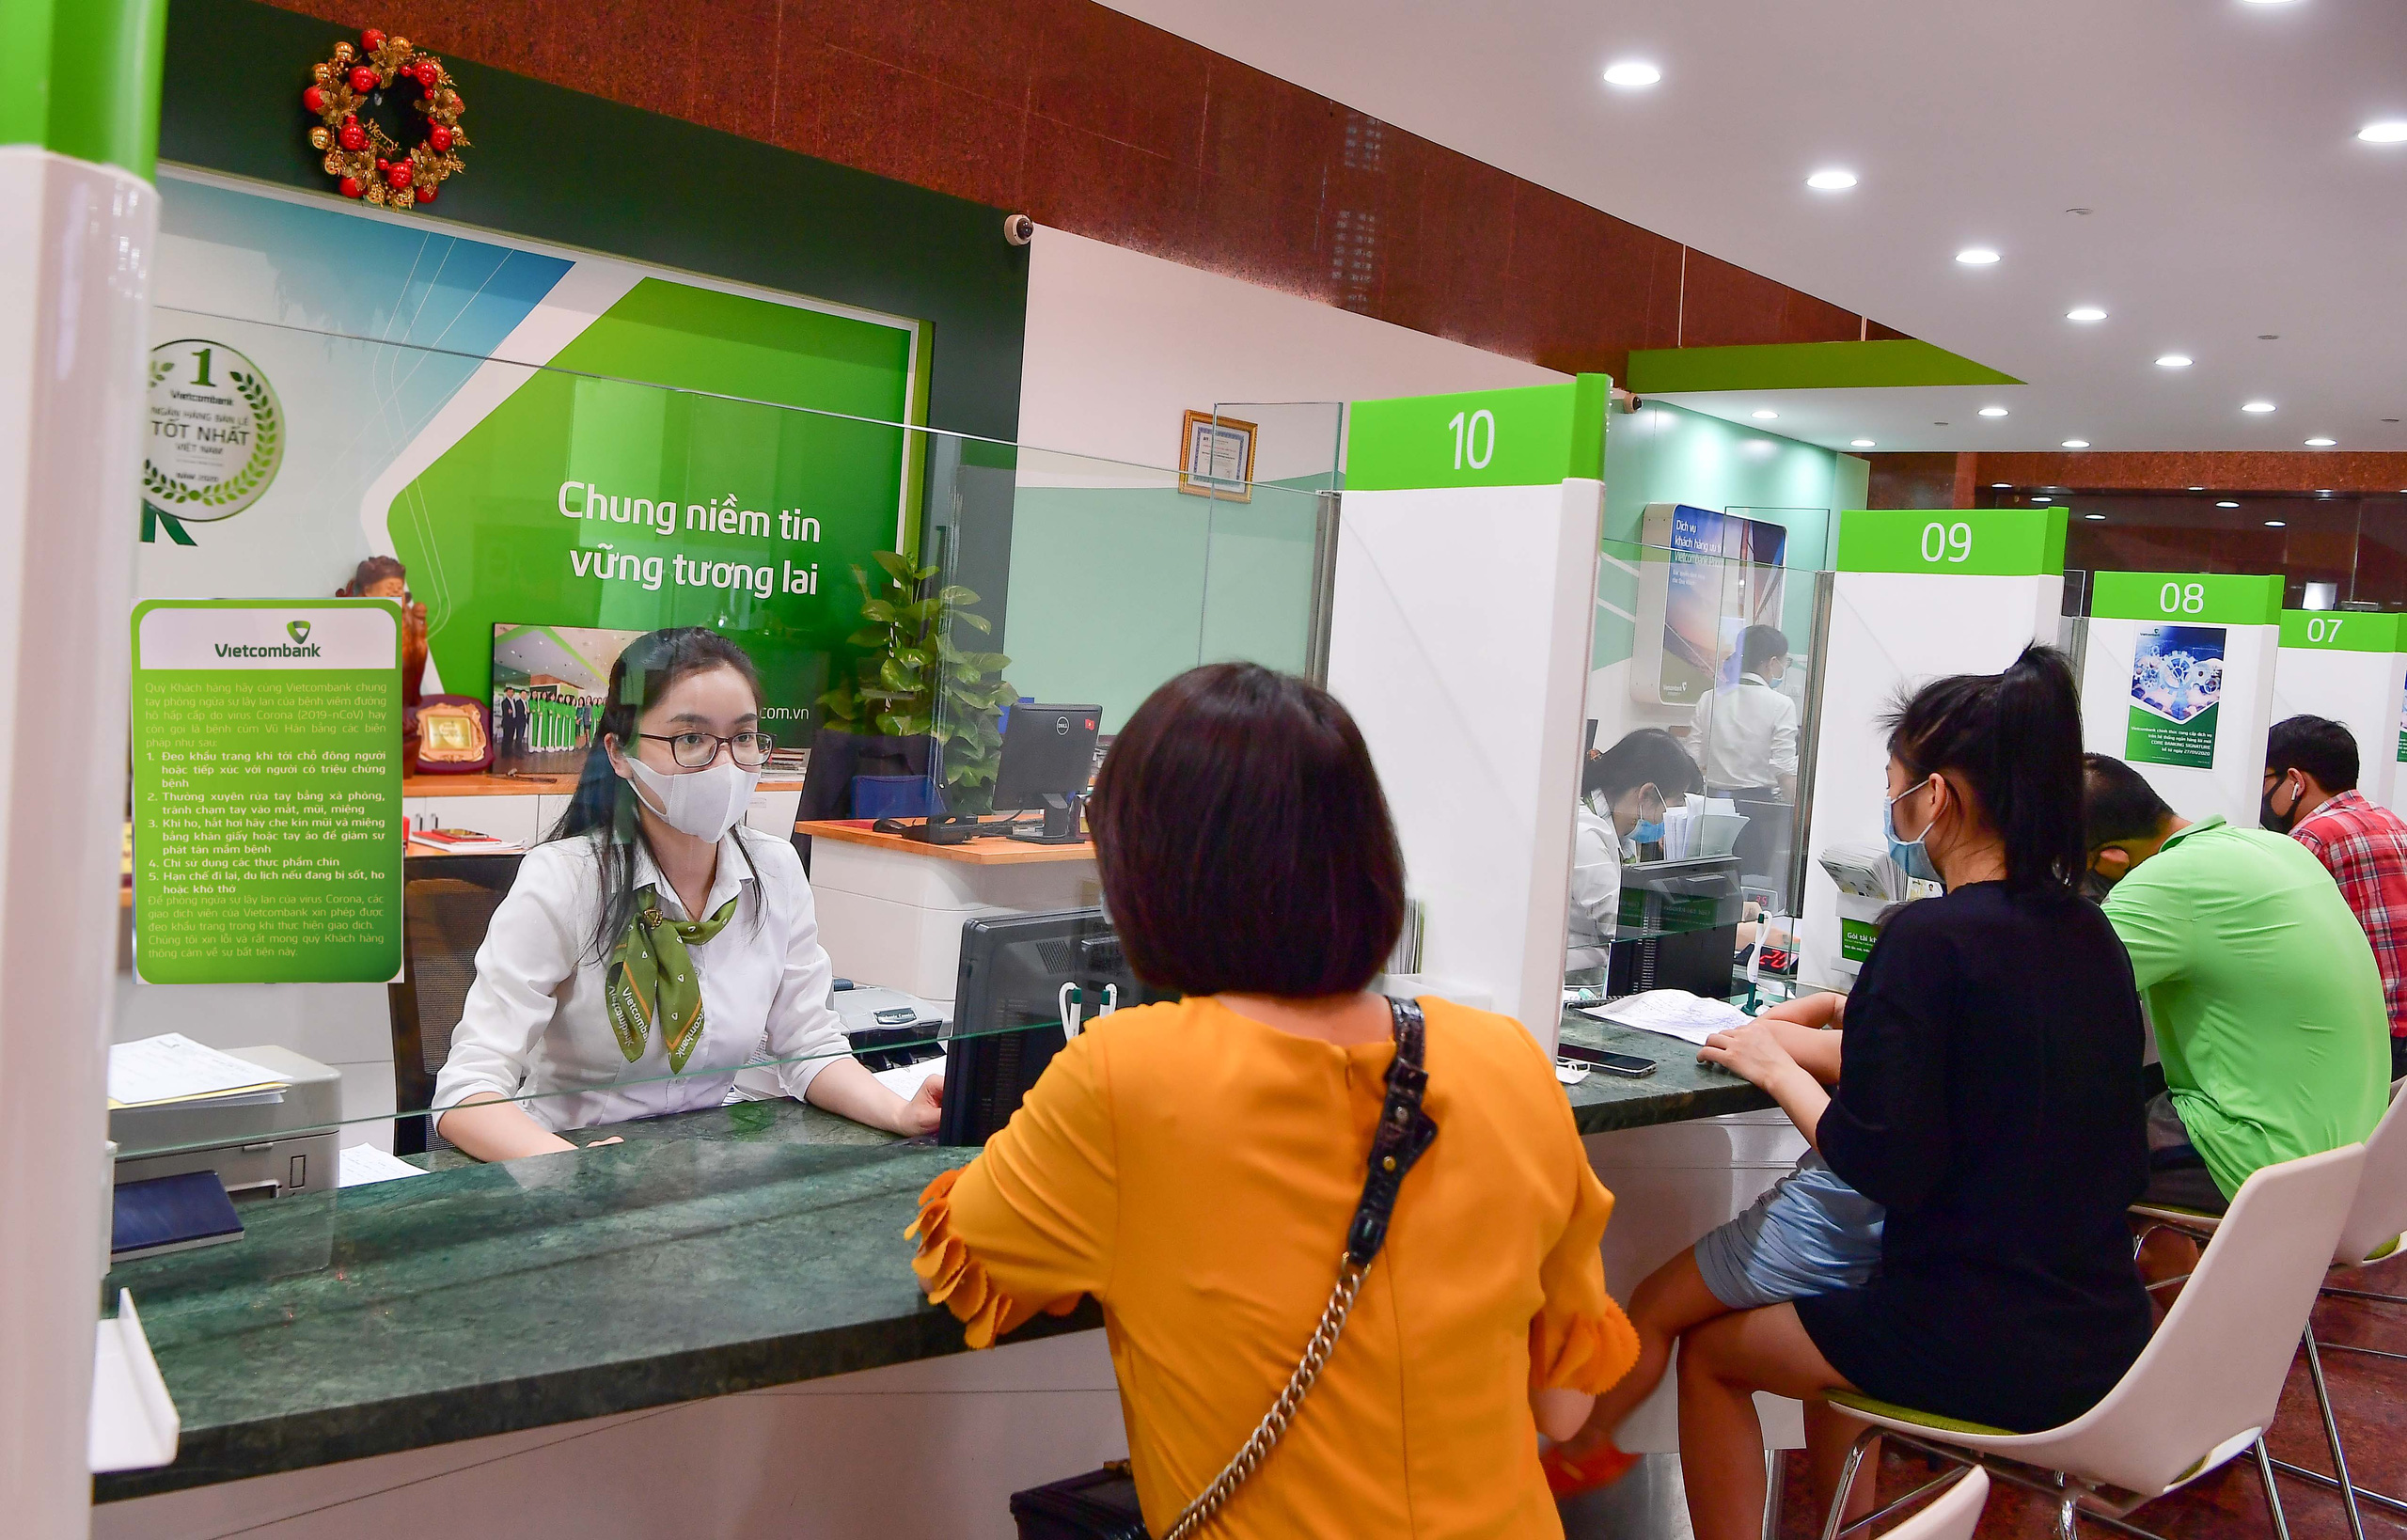 Vietcombank giảm lãi suất tiền vay và phí hỗ trợ khách hàng tại hai tỉnh Bắc Giang và Bắc Ninh - Ảnh 3.